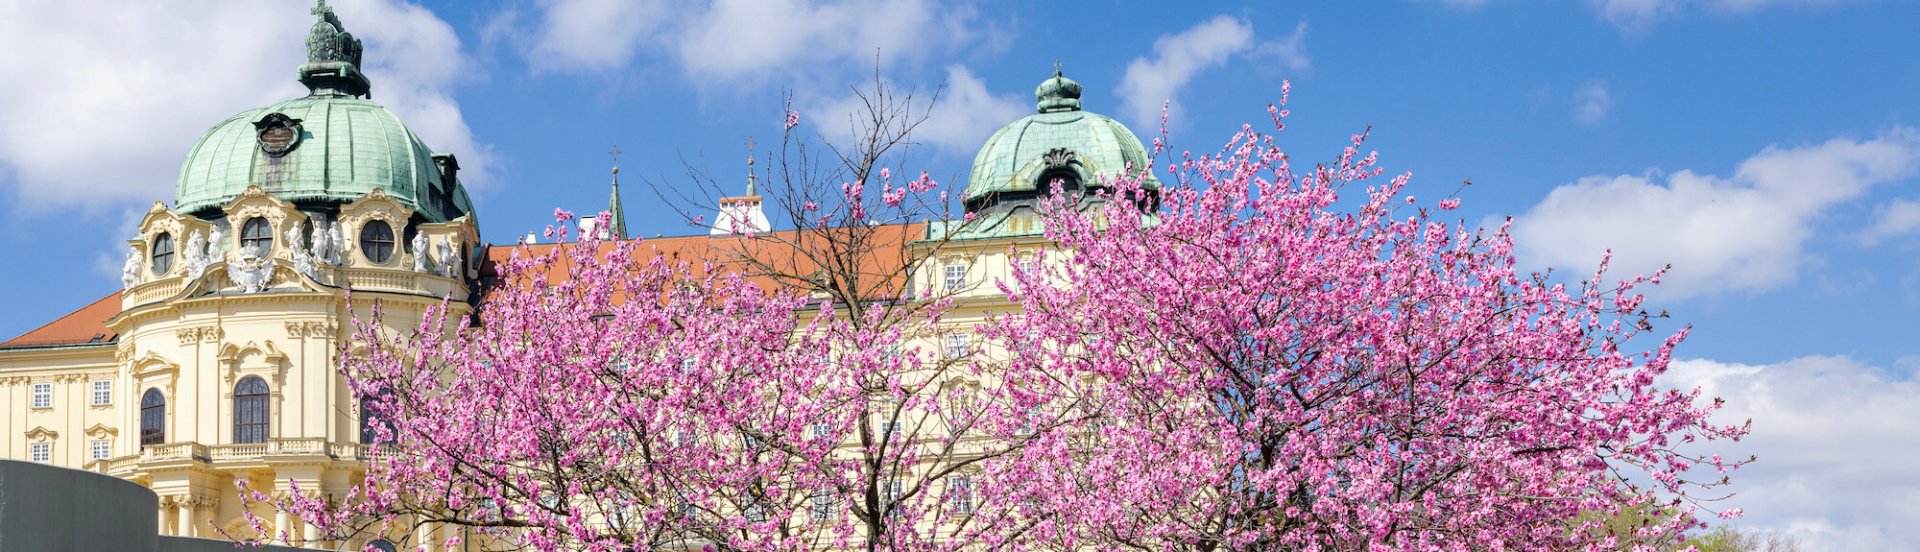 Das Stift Klosterneuburg hinter einem rosa blühenden Baum im Frühling